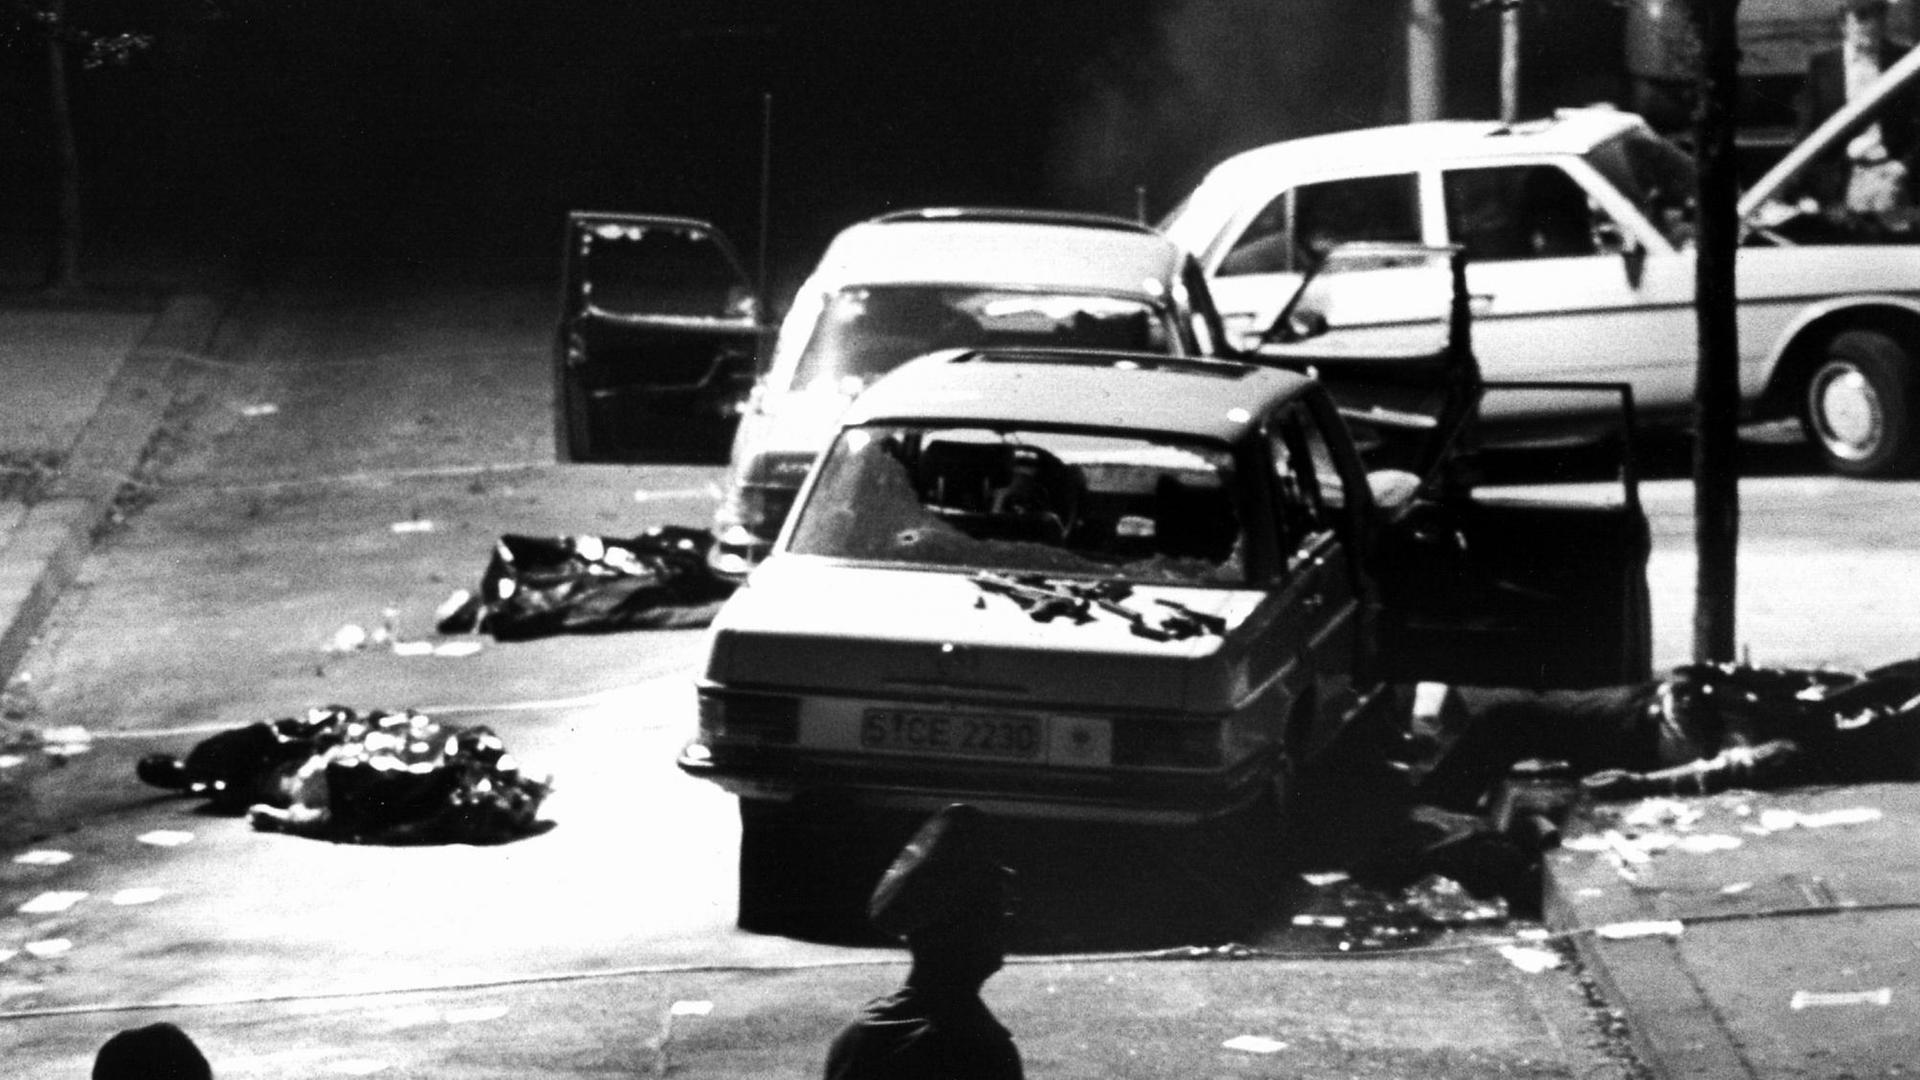 Am 5. September 1977 entführten Terroristen der Roten Armee Fraktion (RAF) den damaligen Arbeitgeberpräsidenten Hanns Martin Schleyer. Blick auf den Tatort in Köln. Drei Polizisten und der Fahrer starben bei der Geiselnahme.